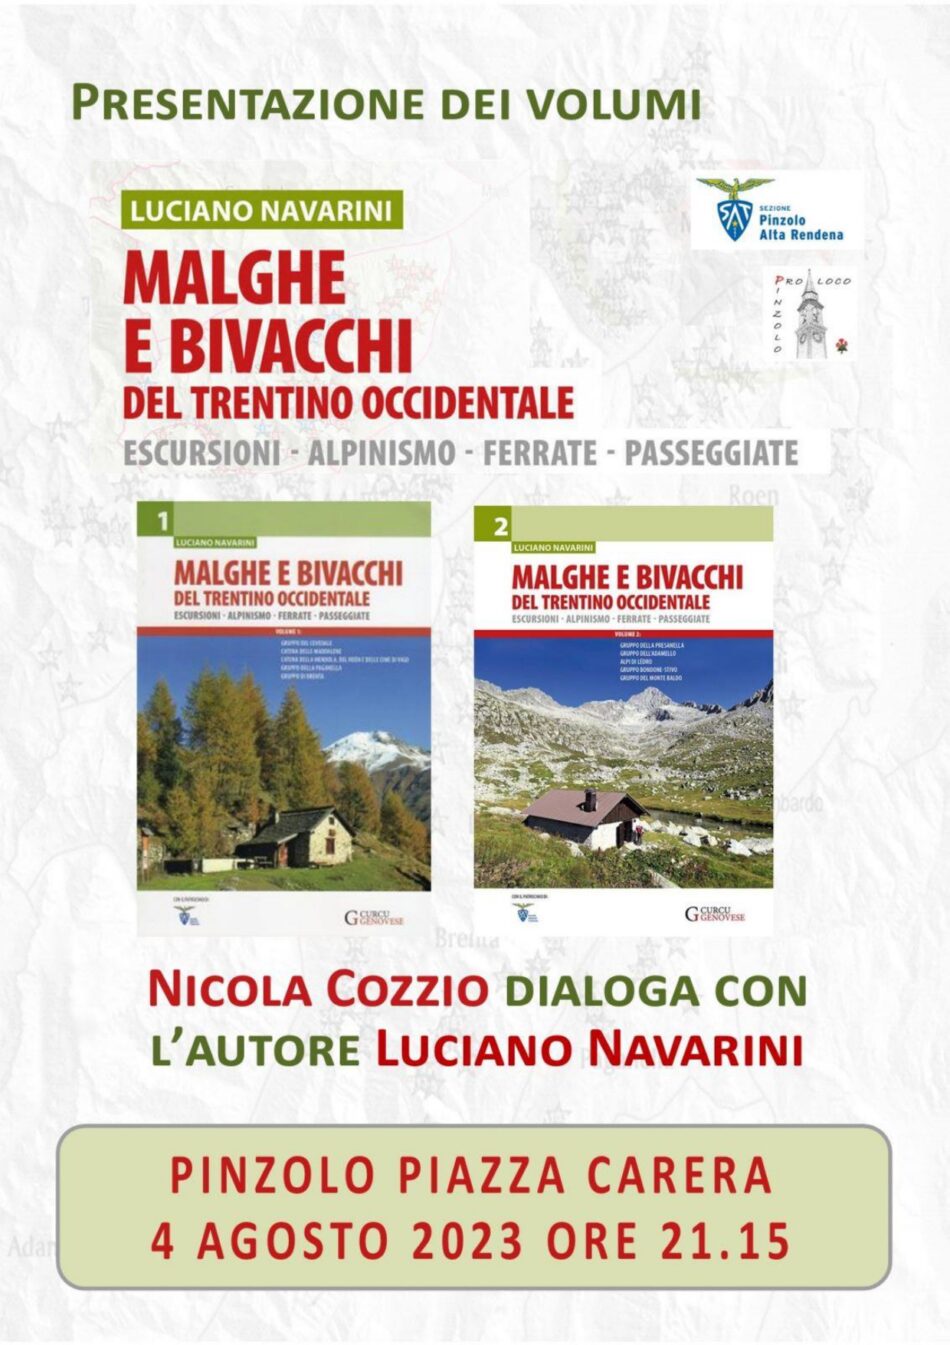 Venerdì 4 agosto ore 21.15 – Presentazione del libro “Malghe e Bivacchi” in piazza Carera